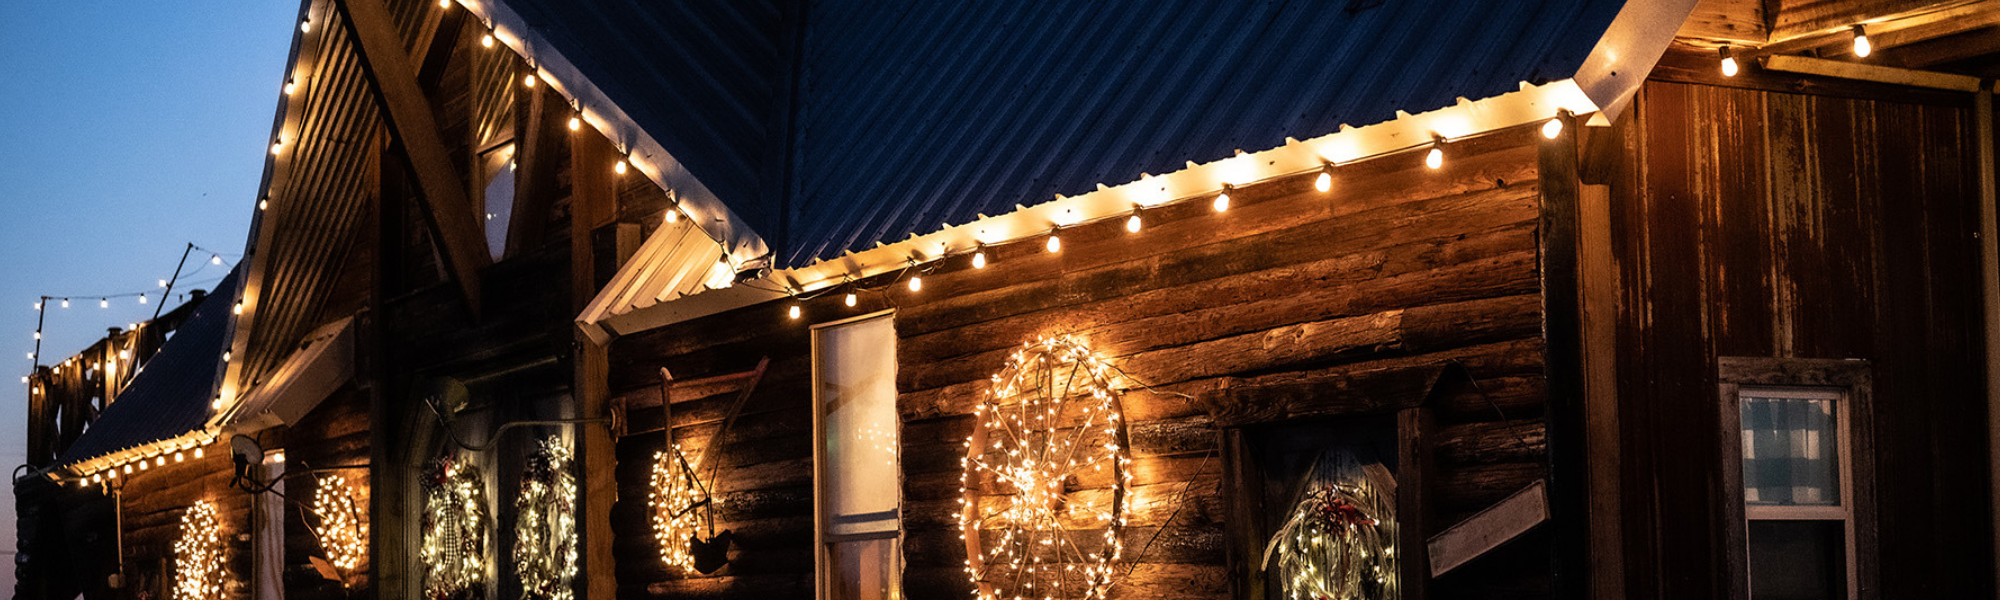 barn exterior with Christmas lights